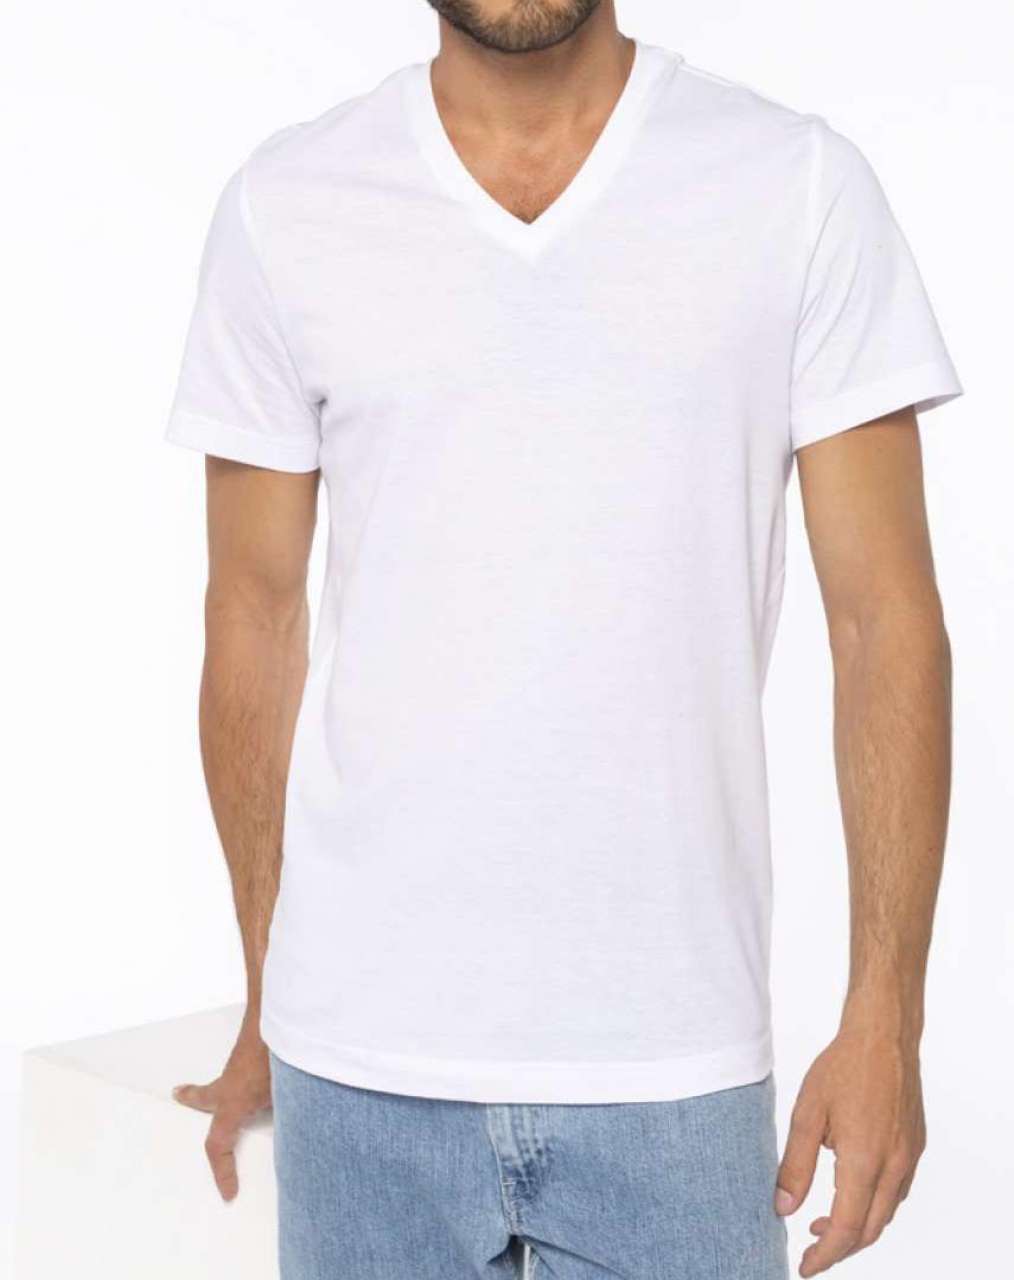 Kariban Herren T-Shirt Kurzarm V-Ausschnitt V-Neck Sommer Shirt